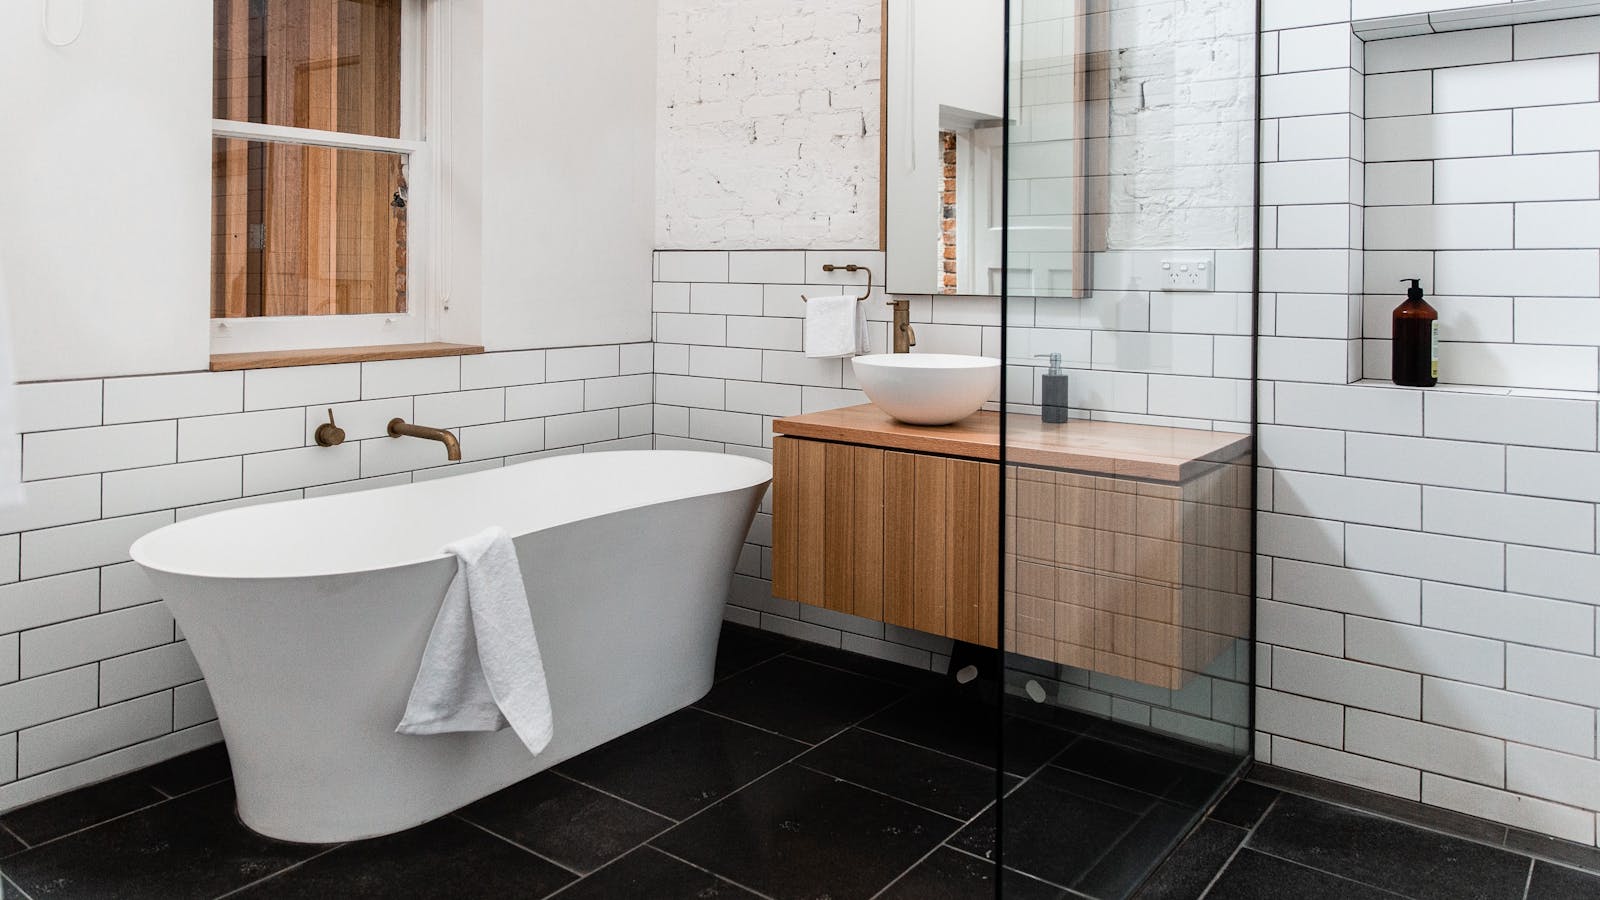 Main bathroom with luxury white-stone bath tub & walk-in shower